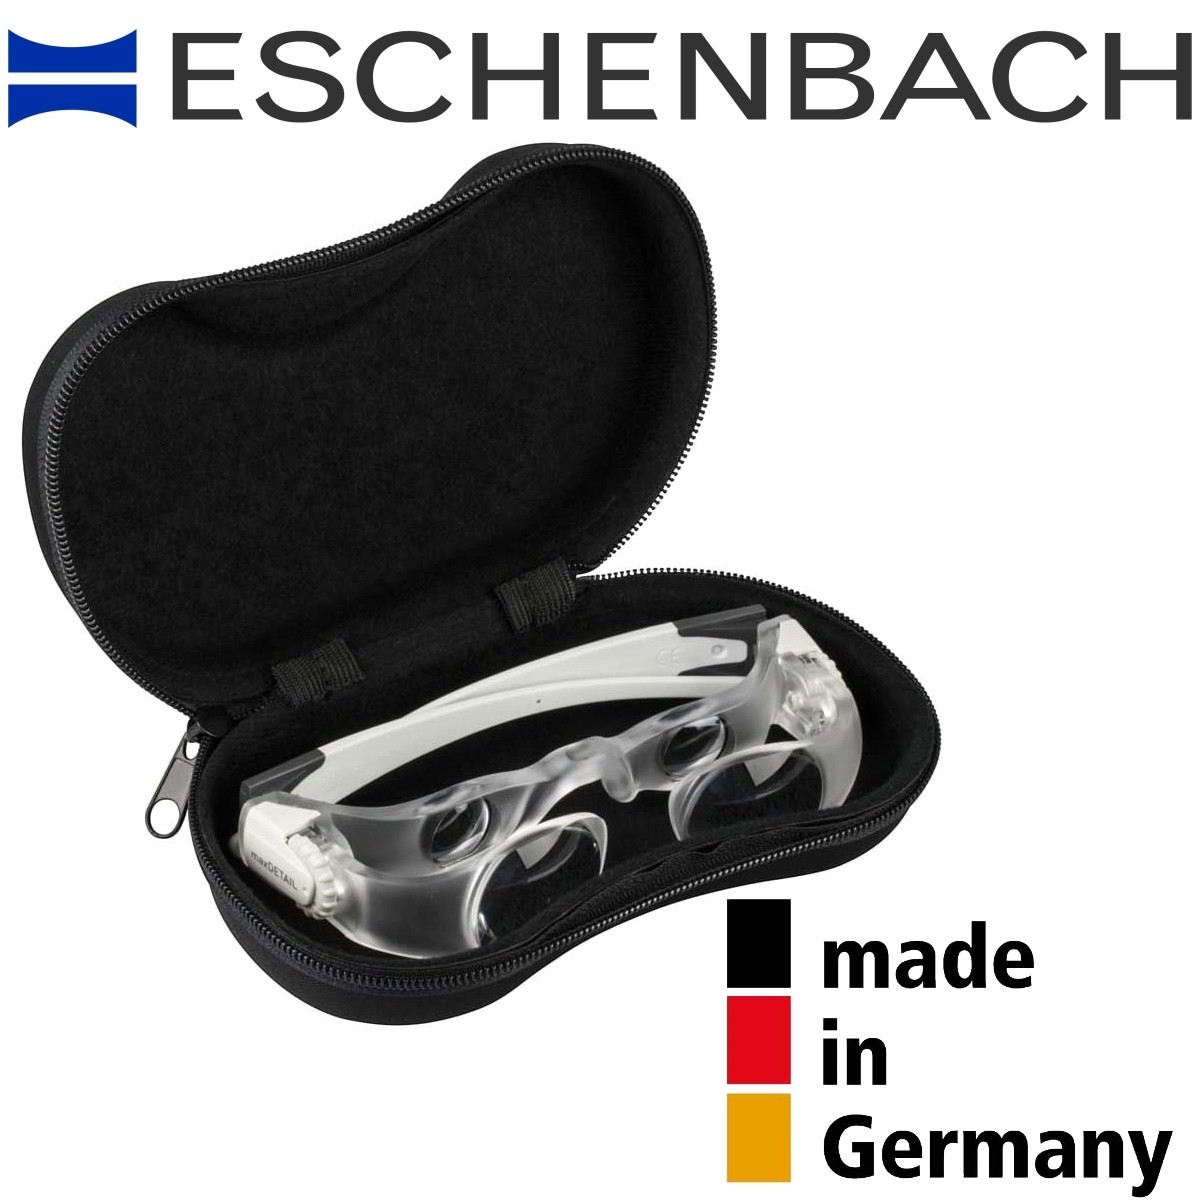 Lampe frontale à clipser Eschenbach pour lunettes loupes MaxDetail